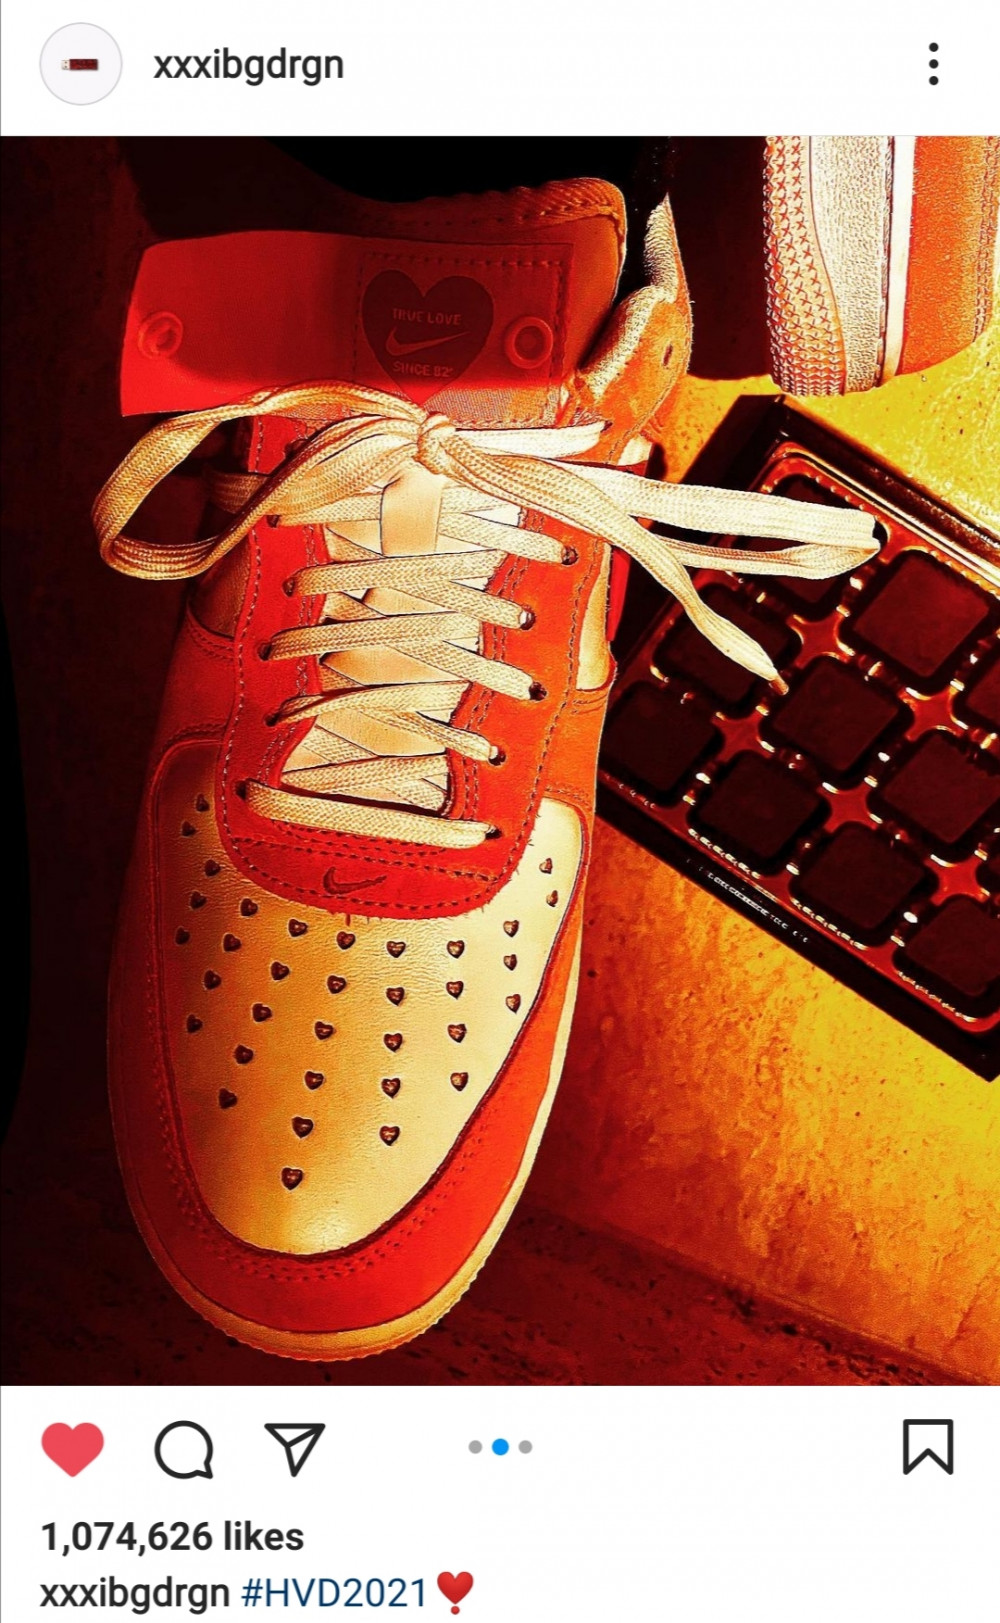 Цена на специальную модель кроссовок Nike "Valentine's Day" подскочила в полтора раза благодаря G-Dragon